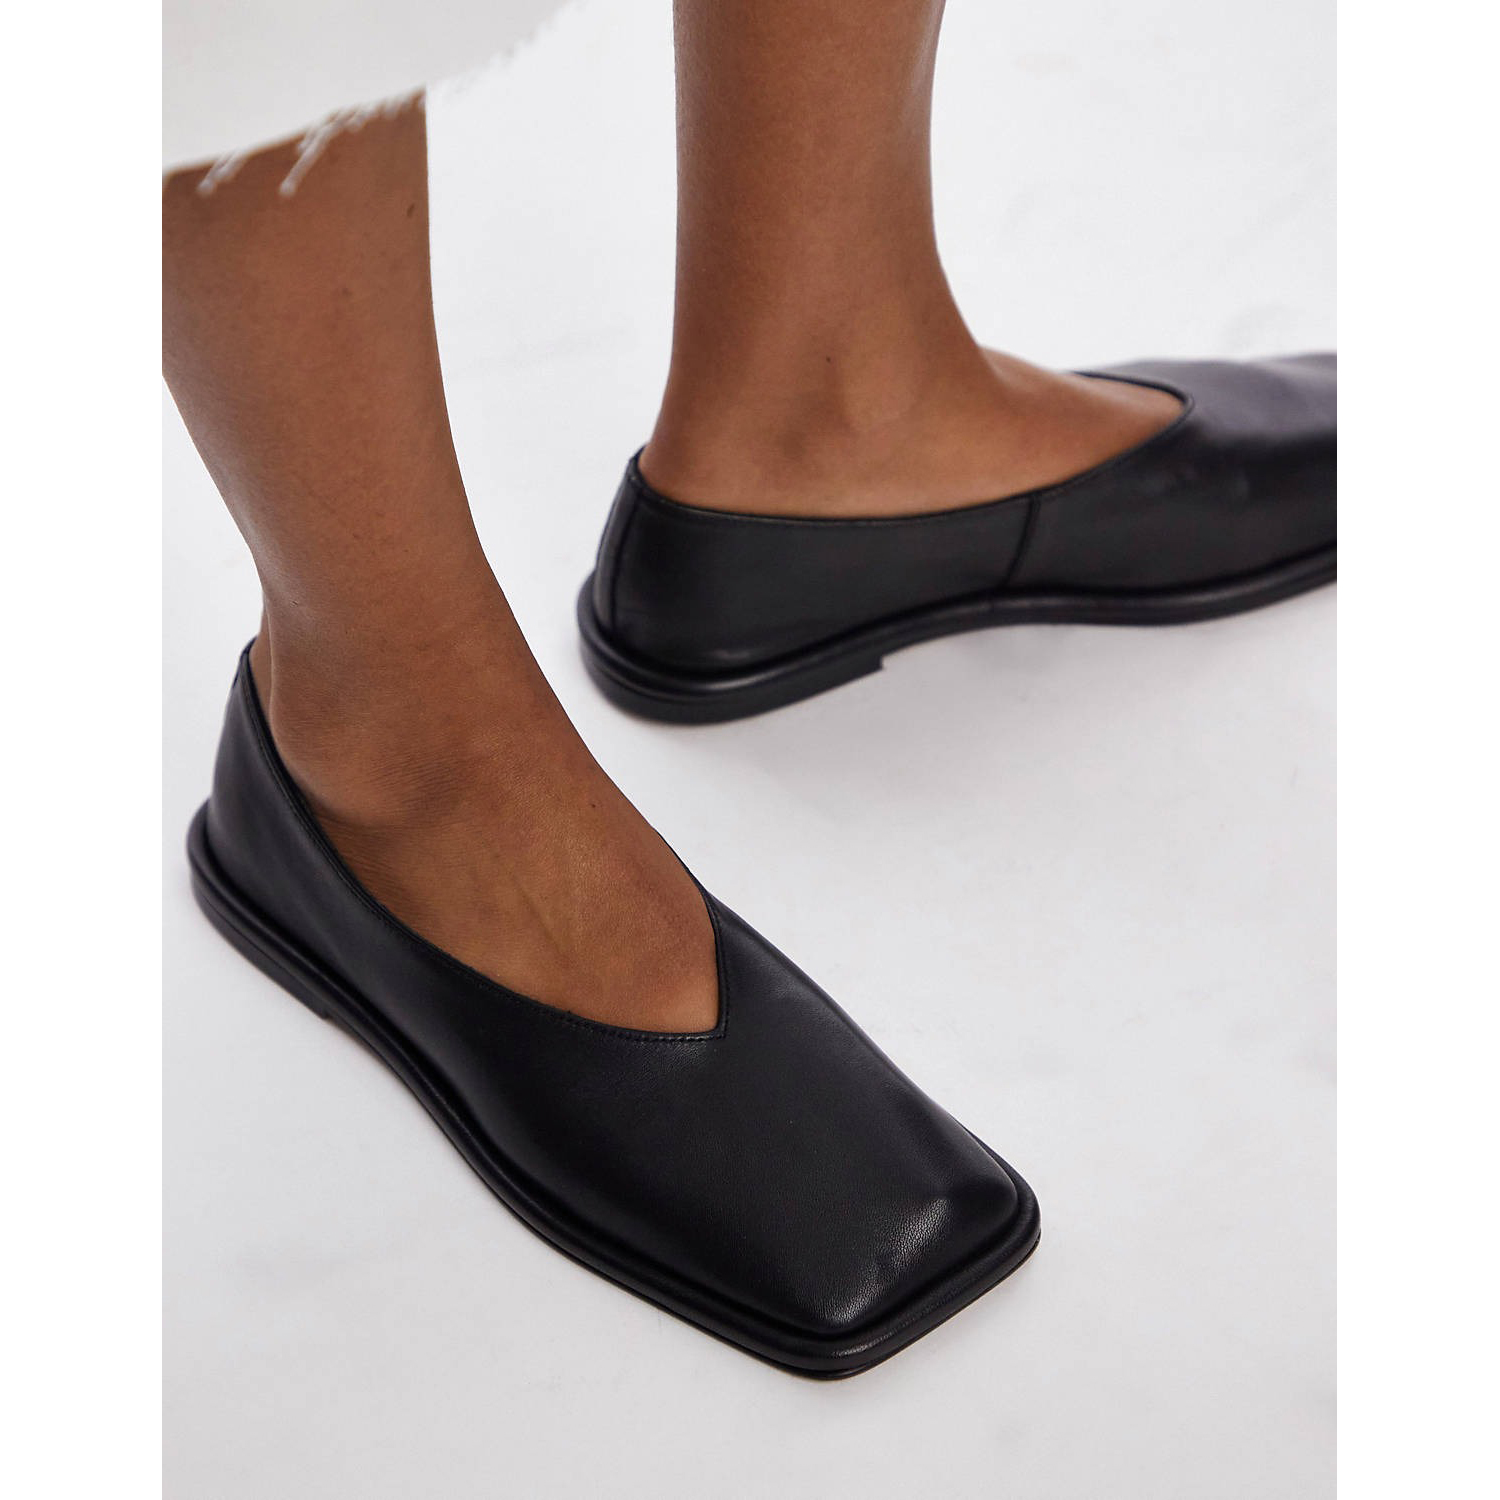 Туфли Topshop Charlotte Leather Square Toe Unlined Flat, черный туфли кожаные без задника на плоской подошве для широкой стопы размер 38 45 38 черный